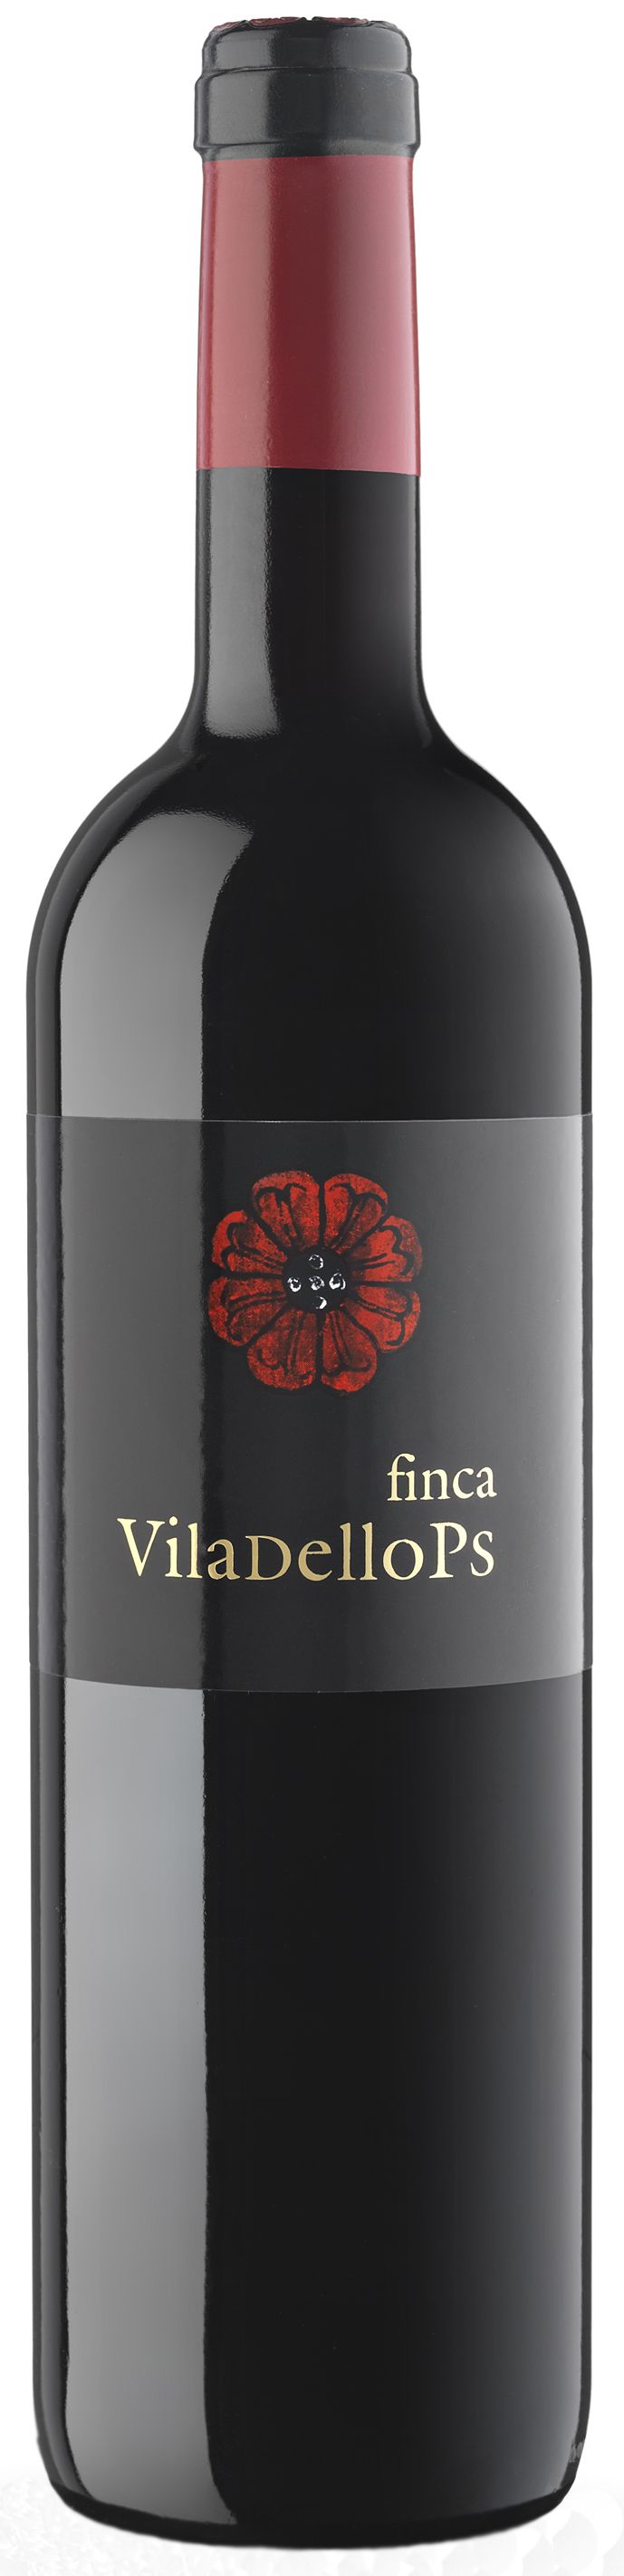 Finca Viladellops, 2011